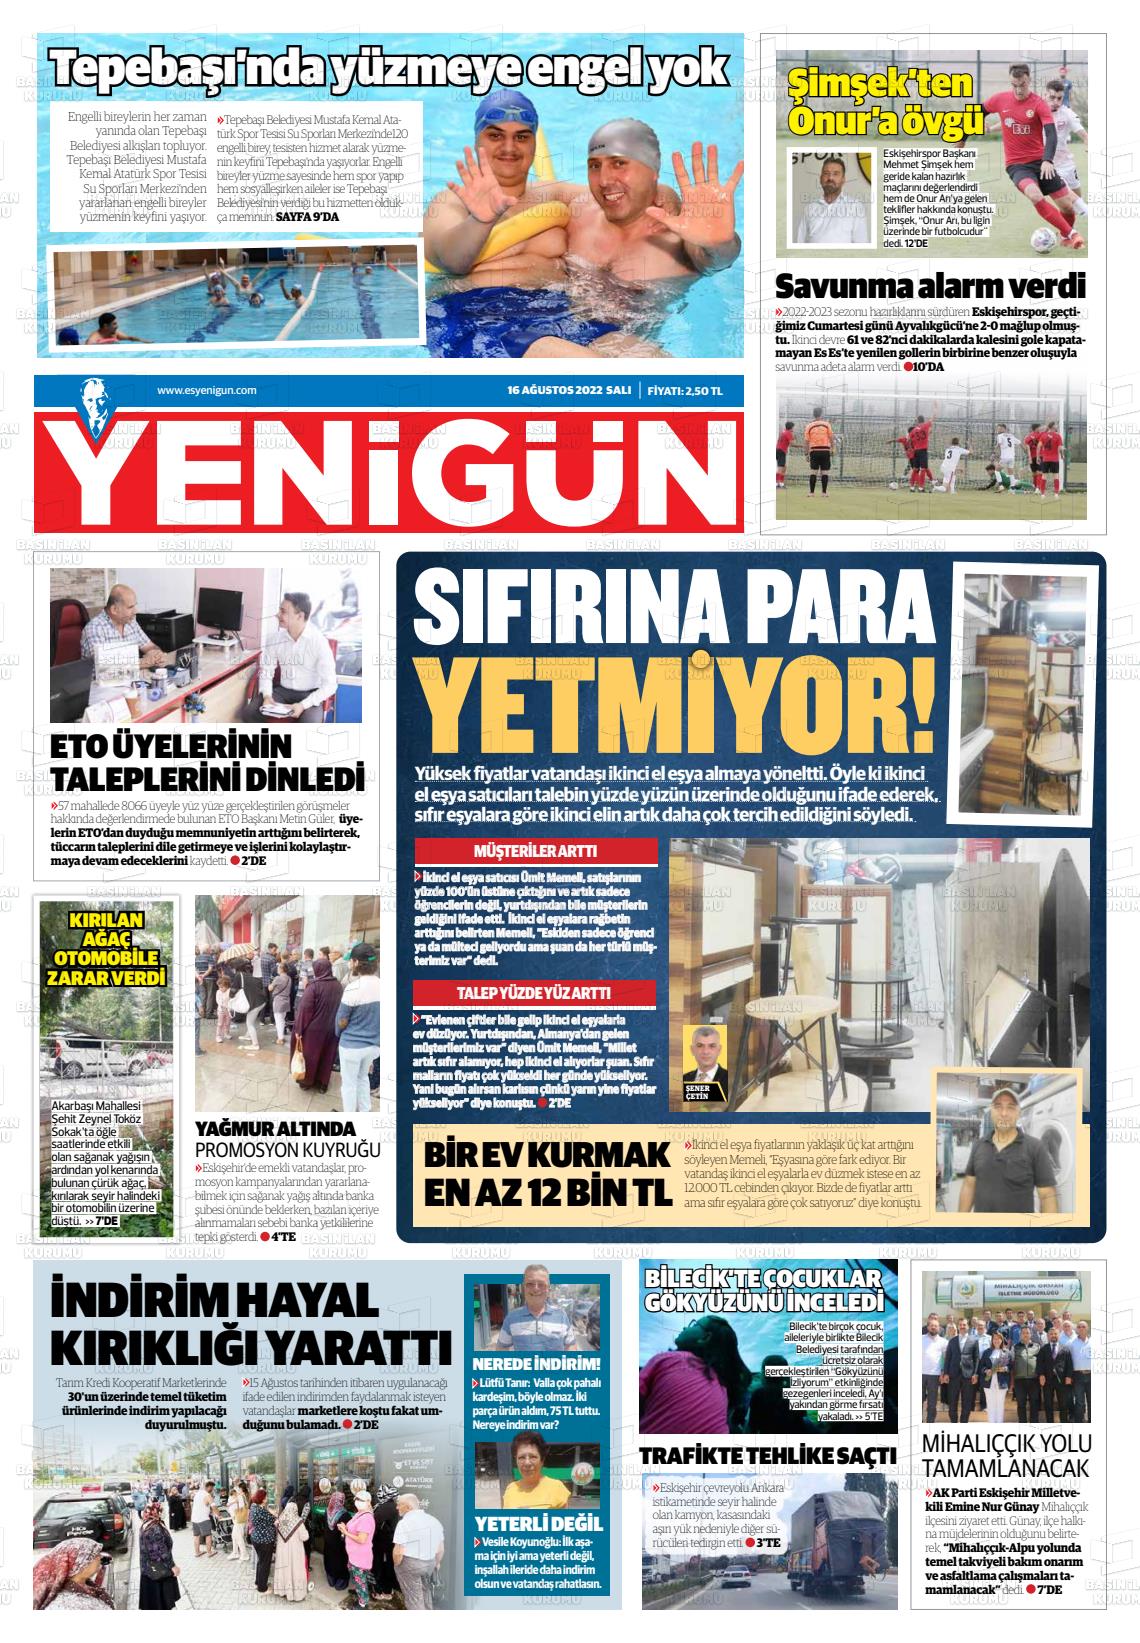 16 Ağustos 2022 Eskişehir Yeni Gün Gazete Manşeti